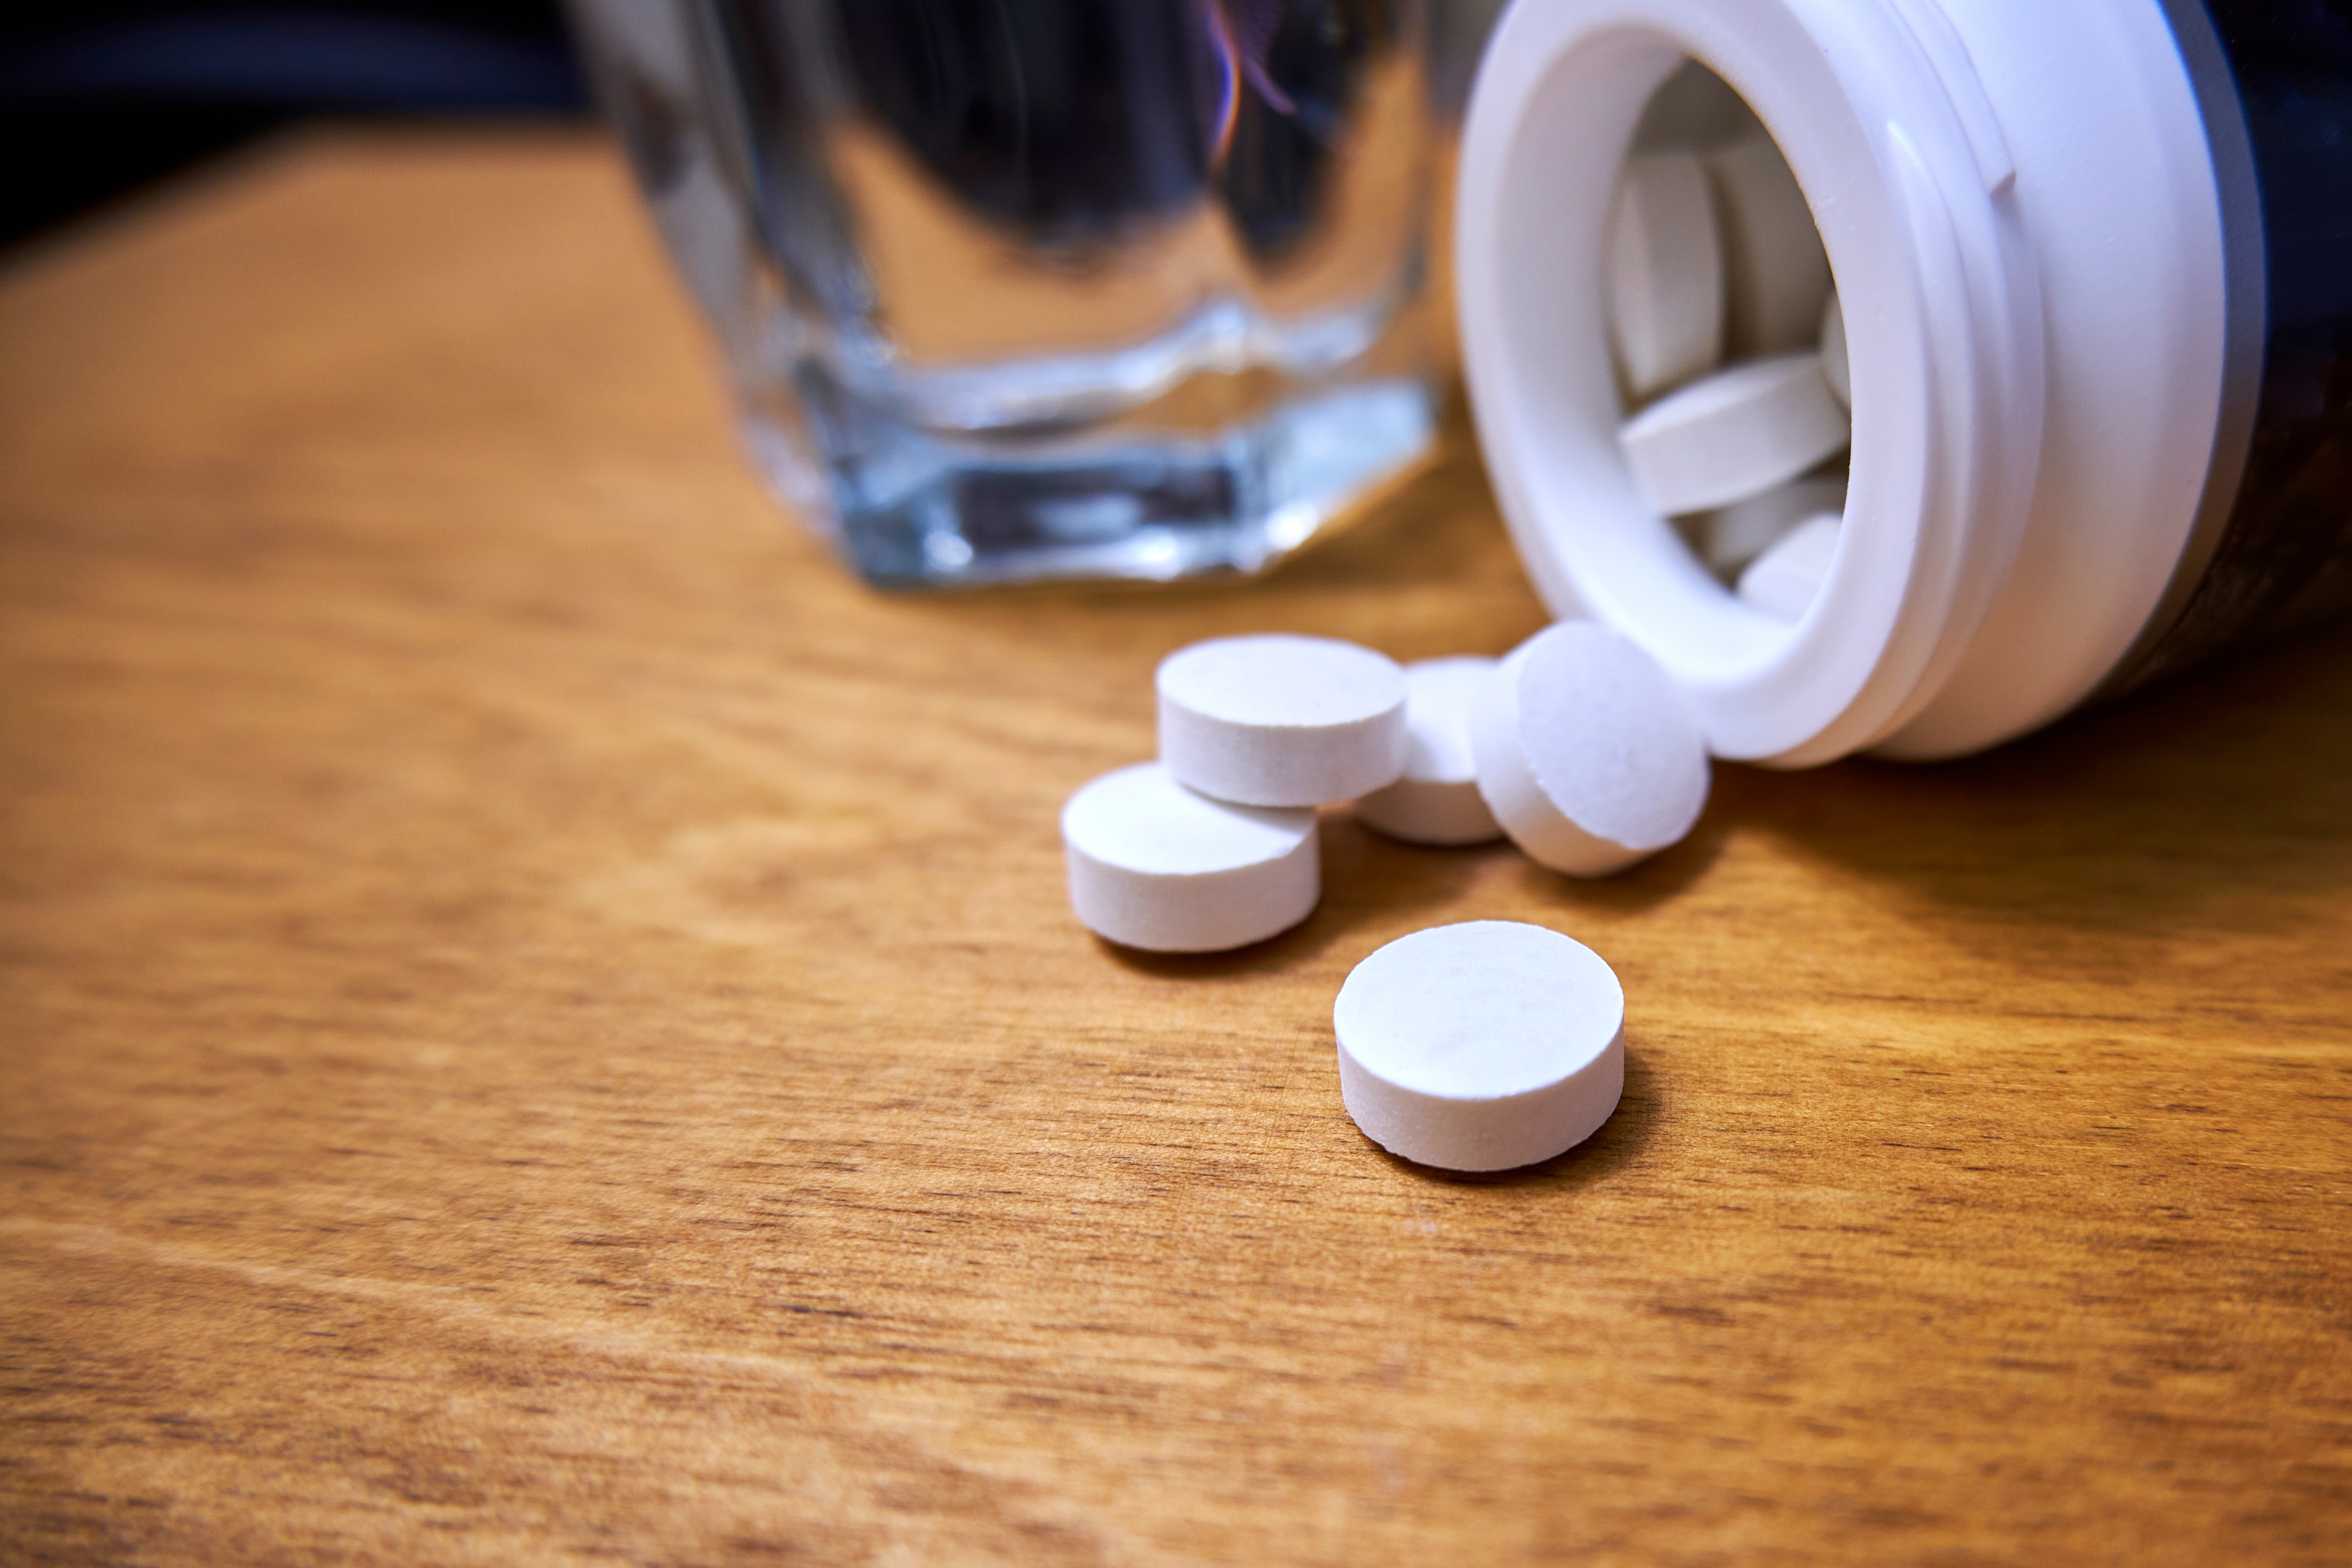 Primer plano de las pastillas y el vial sobre la mesa. | Fuente: Shutterstock